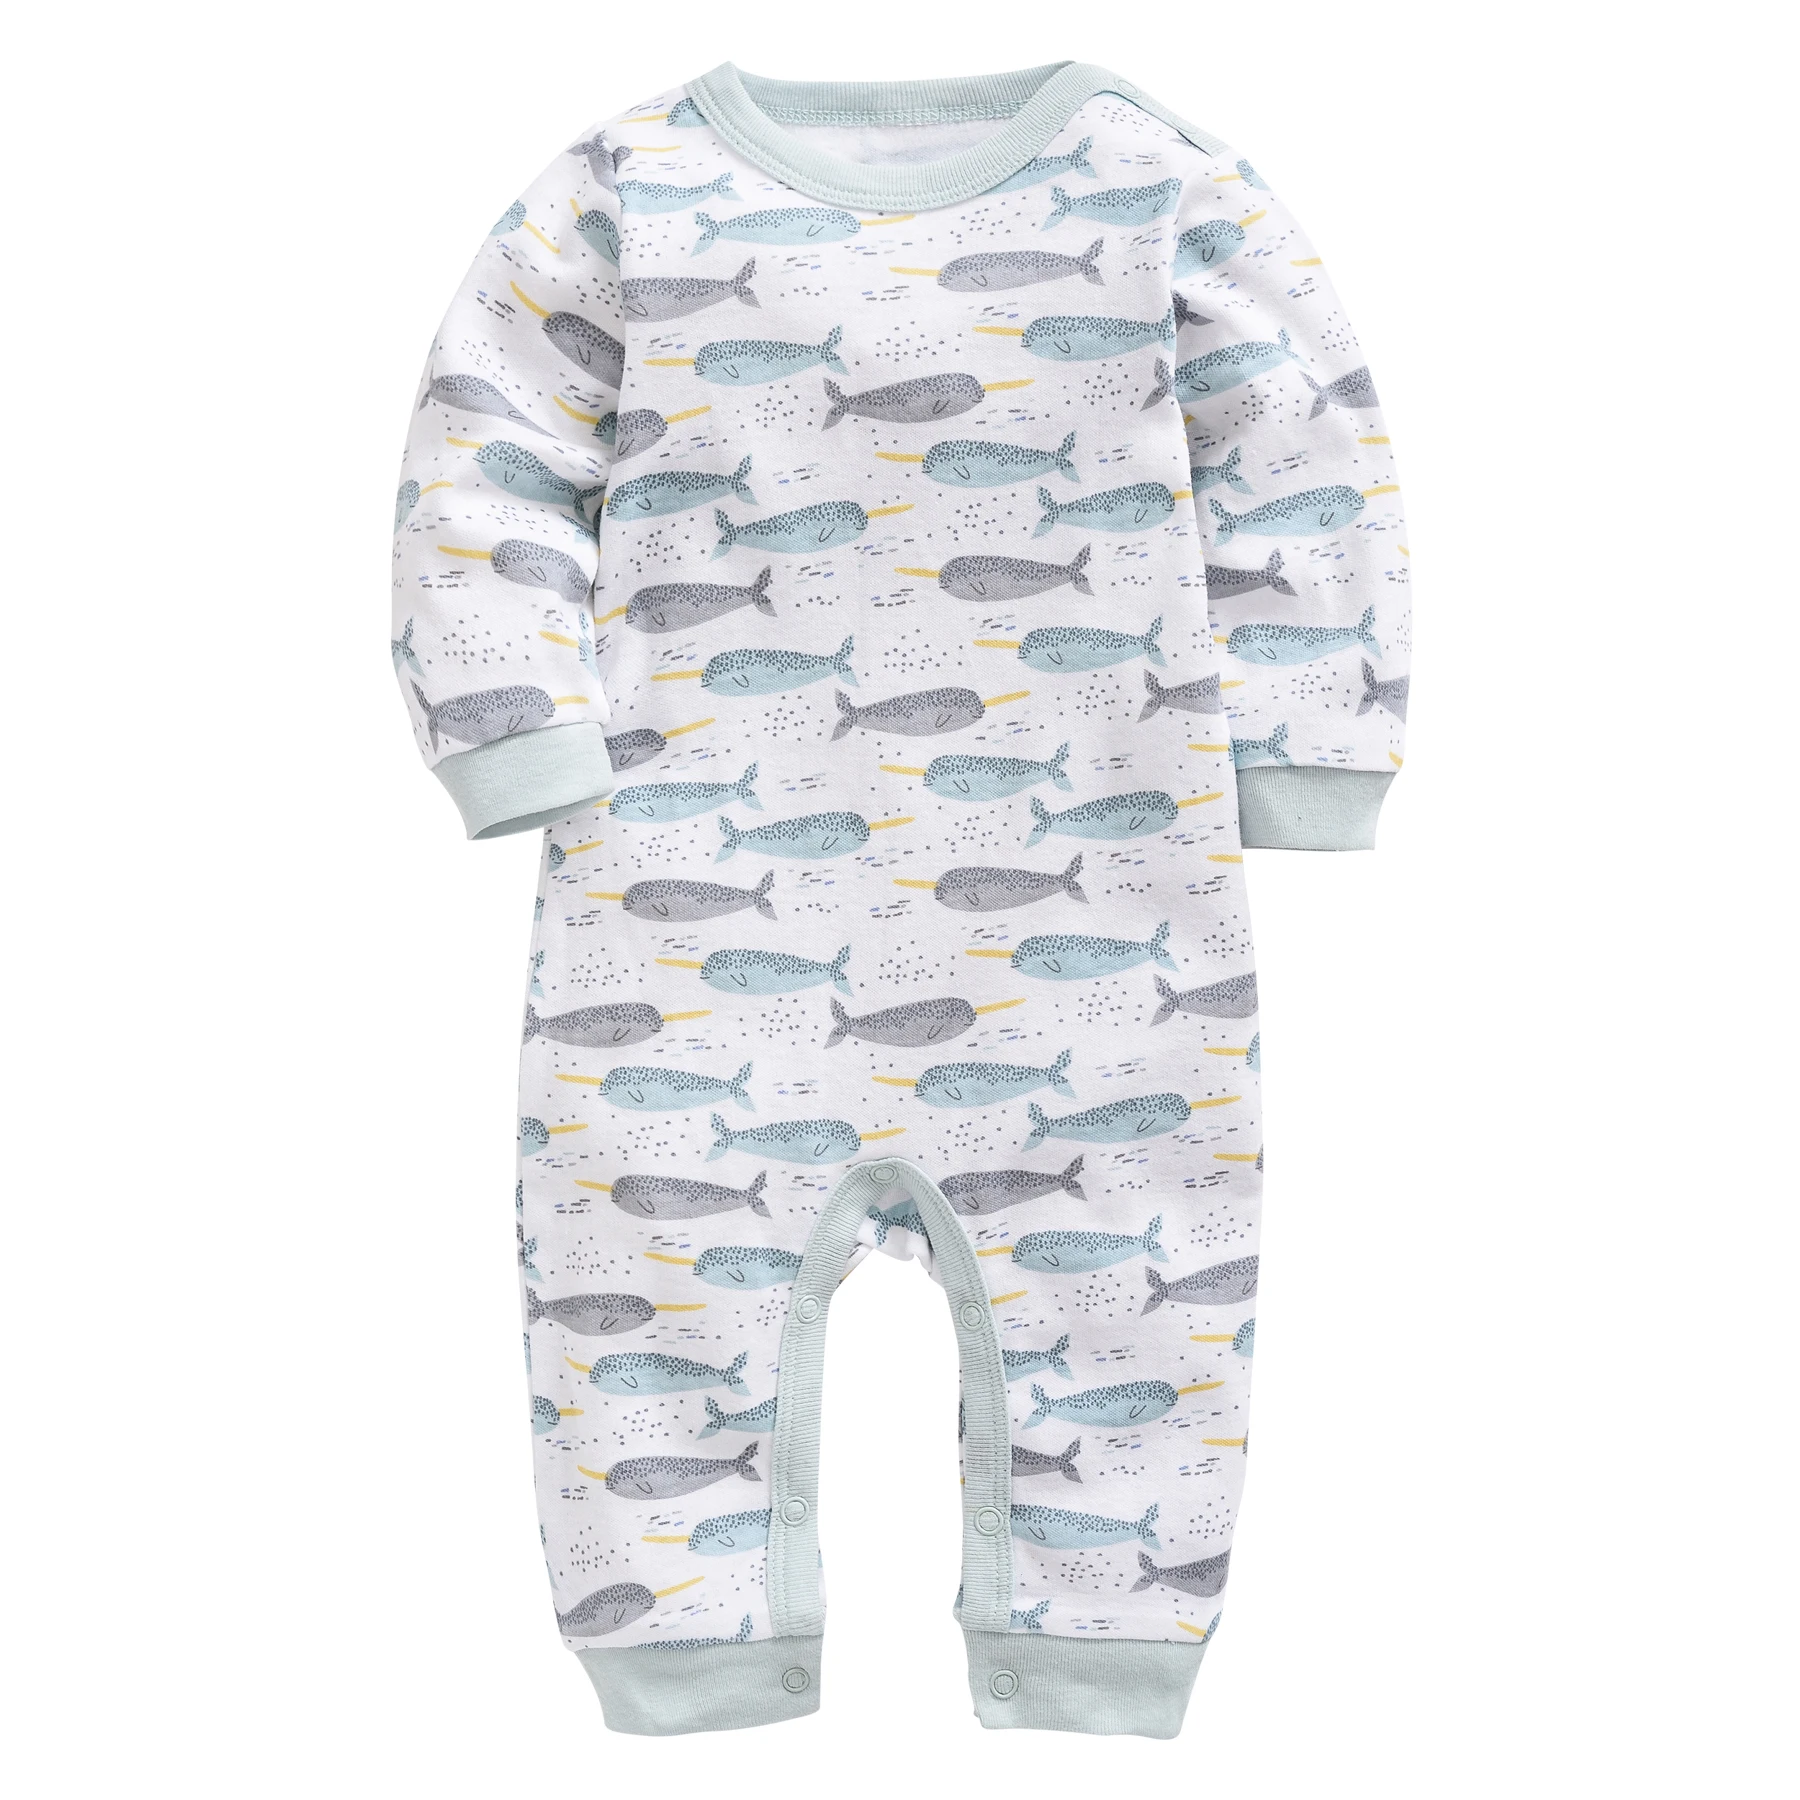 

Baby Boy Clothes Rompers Newborn Girl Cute Print Playsuits Sunsuit Cotton Soft New Born Infant Jumpsuit Body suit Baberos Onesie